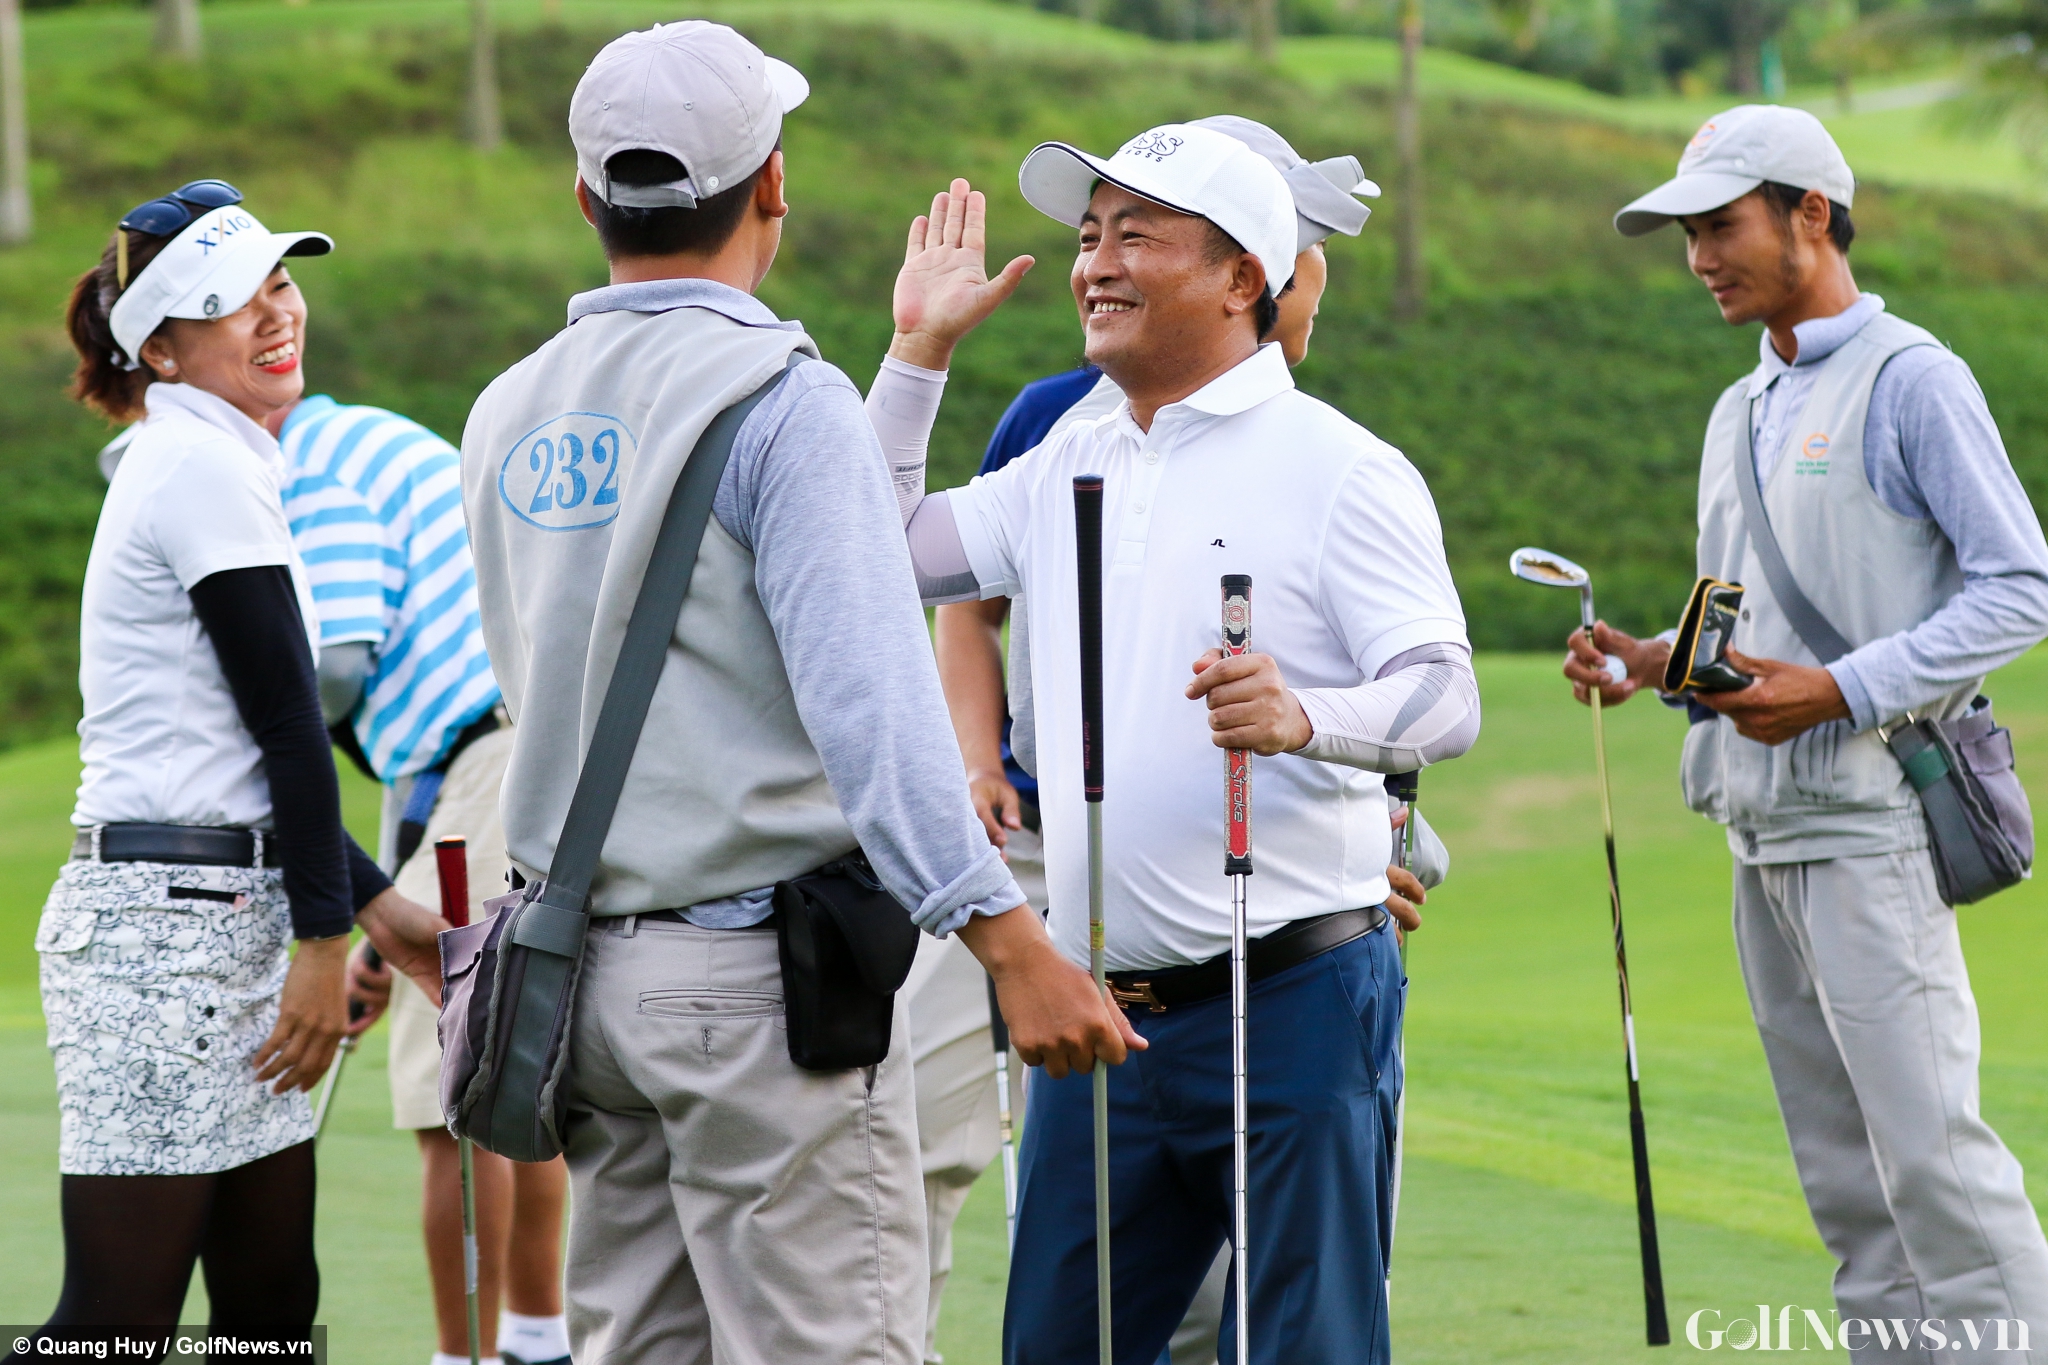 Chùm ảnh: Những hình ảnh đẹp tại Giải Golf Từ thiện gây quỹ hỗ trợ Hiệp sĩ đường phố gặp nạn